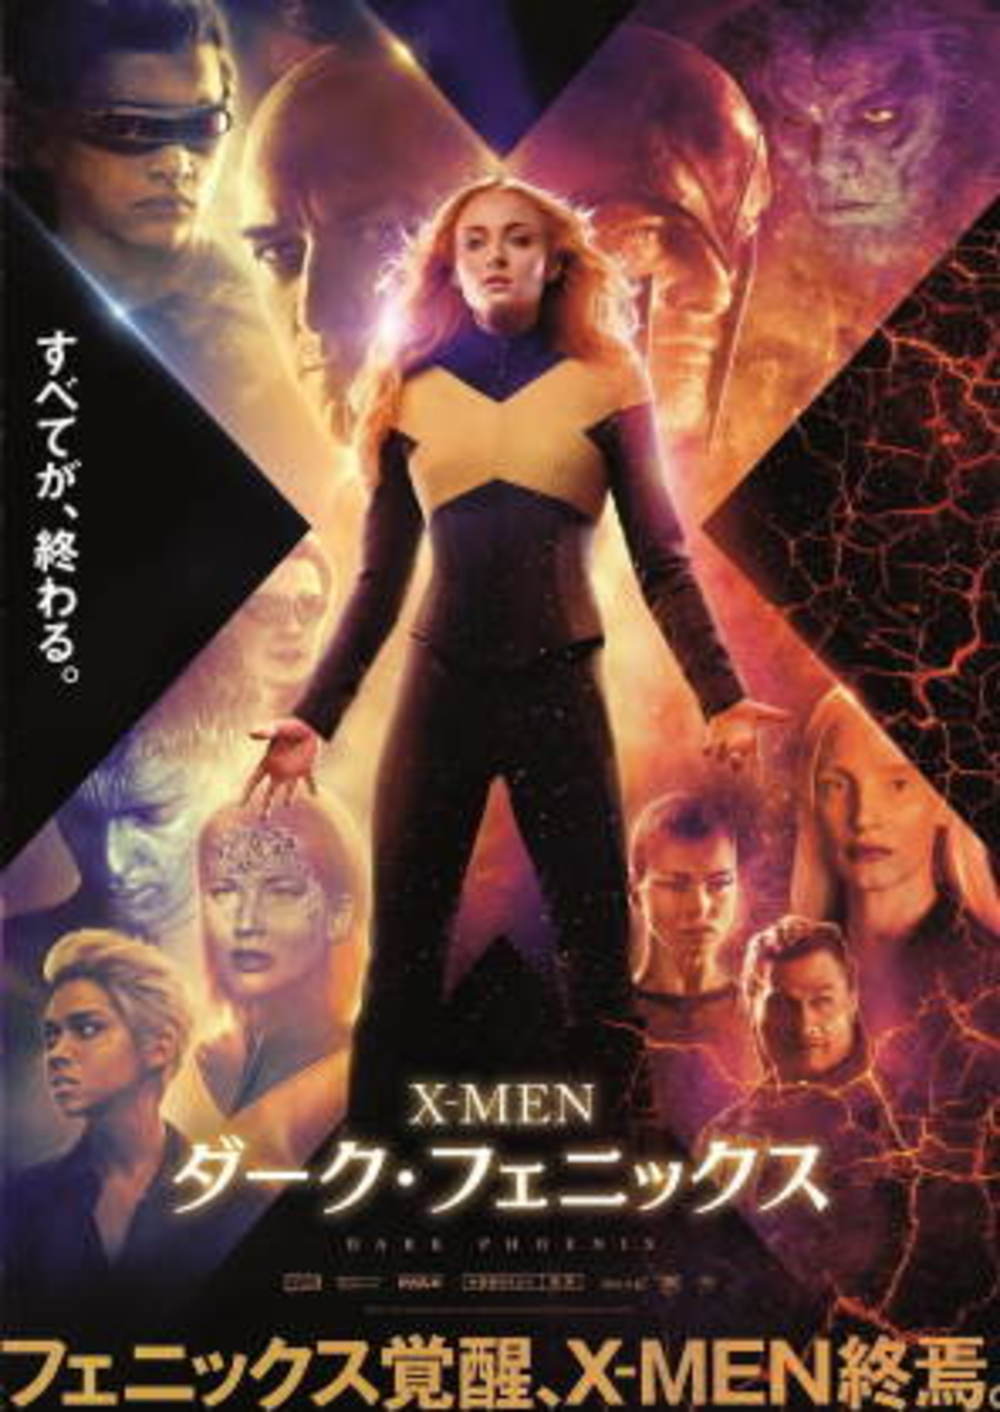 6/23日「X-MEN：ダーク・フェニックス」映画鑑賞会@新宿